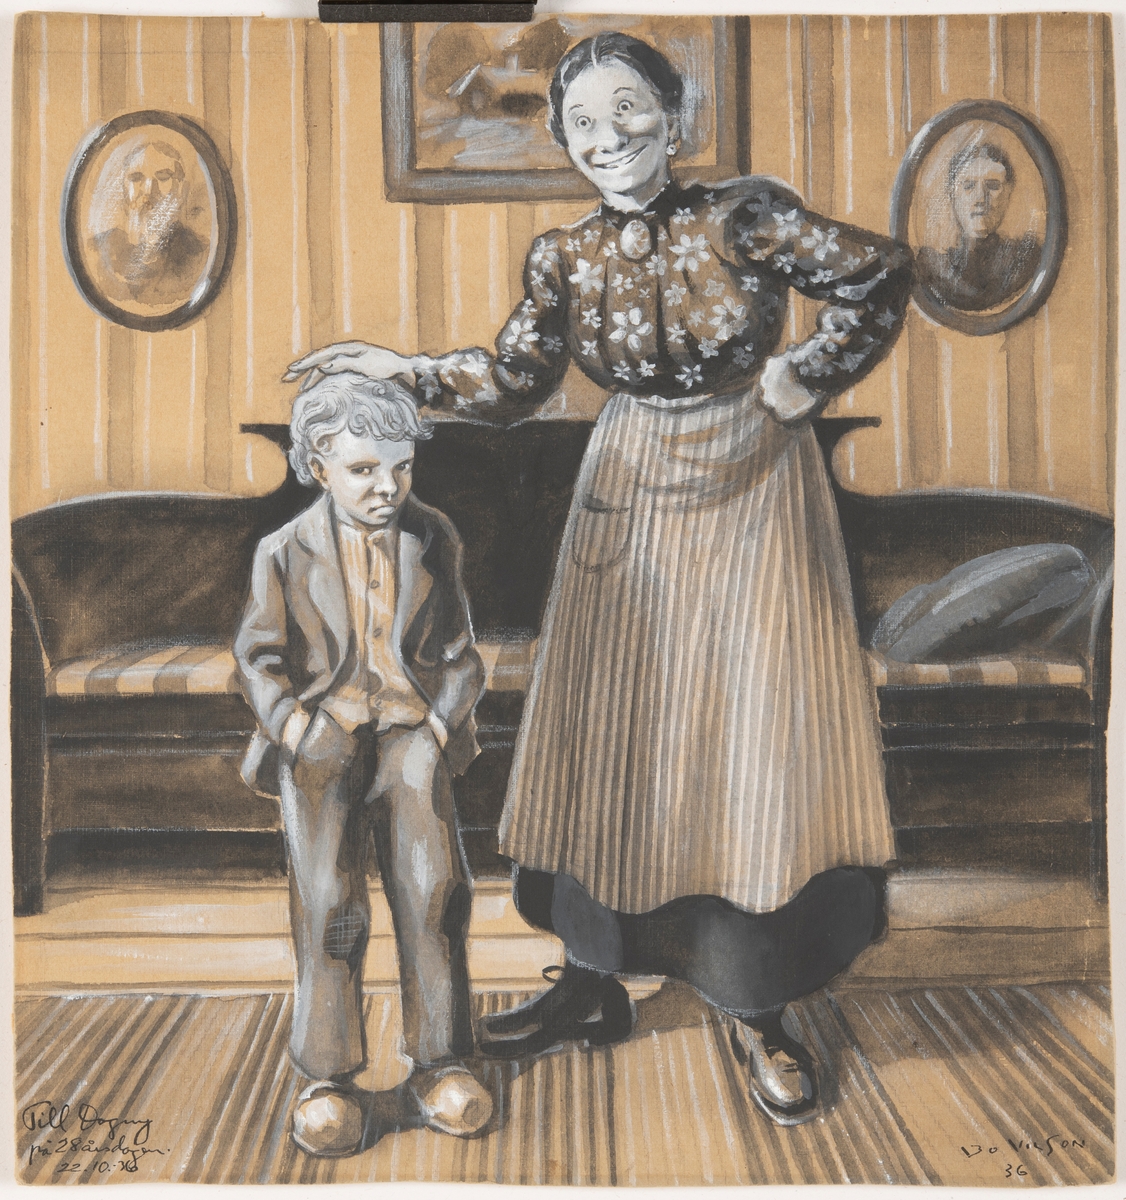 Illustration av dikten "Lelle Karl-Johan" av Gustaf Fröding, publicerad i "Stänk och flikar" 1896.

En kvinna och en pojke står vända mot betraktaren. Kvinnan håller sin hand på pojkens huvud och ser mycket uppsluppen ut, pojken har en sur min och snur rinner ur näsan. Bakom dem en soffa i i Karl johan-stil och fotografier i ovala ramar. Utifrån kläder och inredning ser bilden ut att illustera en scen tidigt 1900-tal.